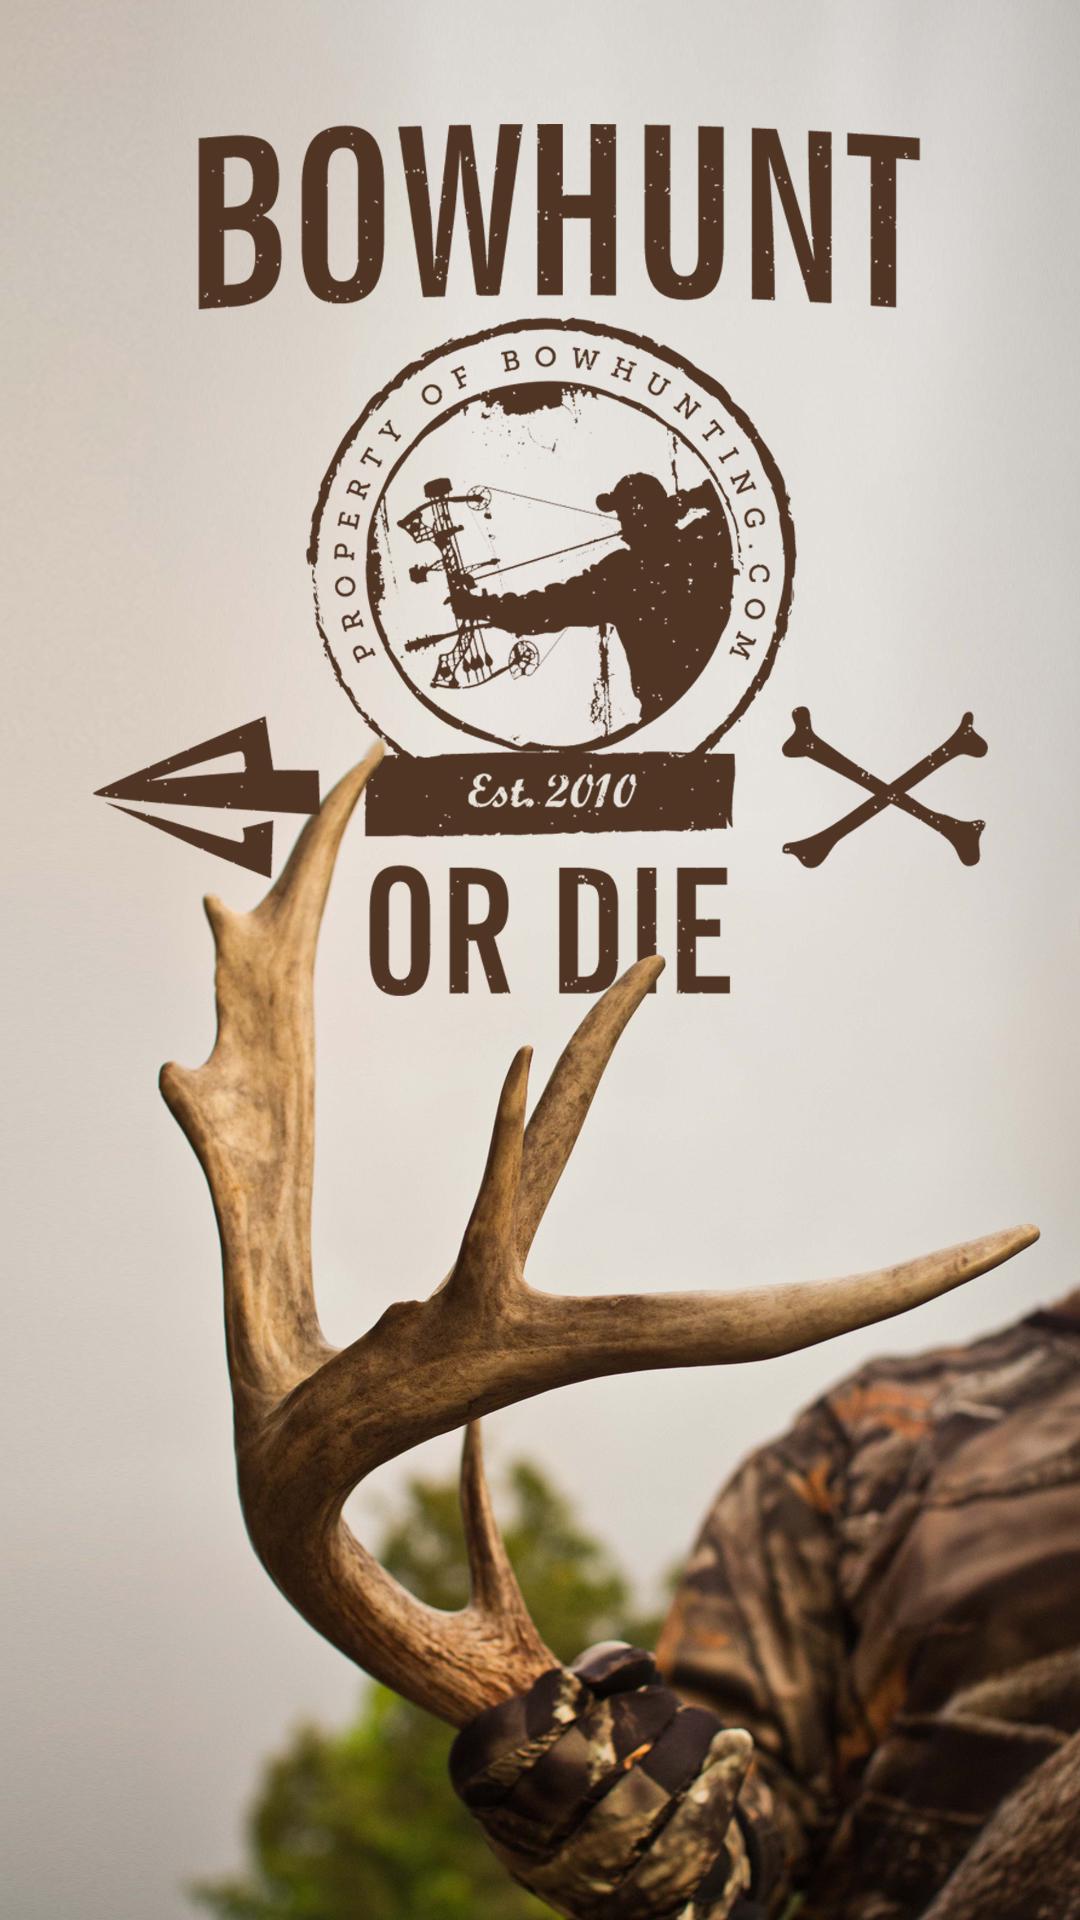 deer hunting wallpaper